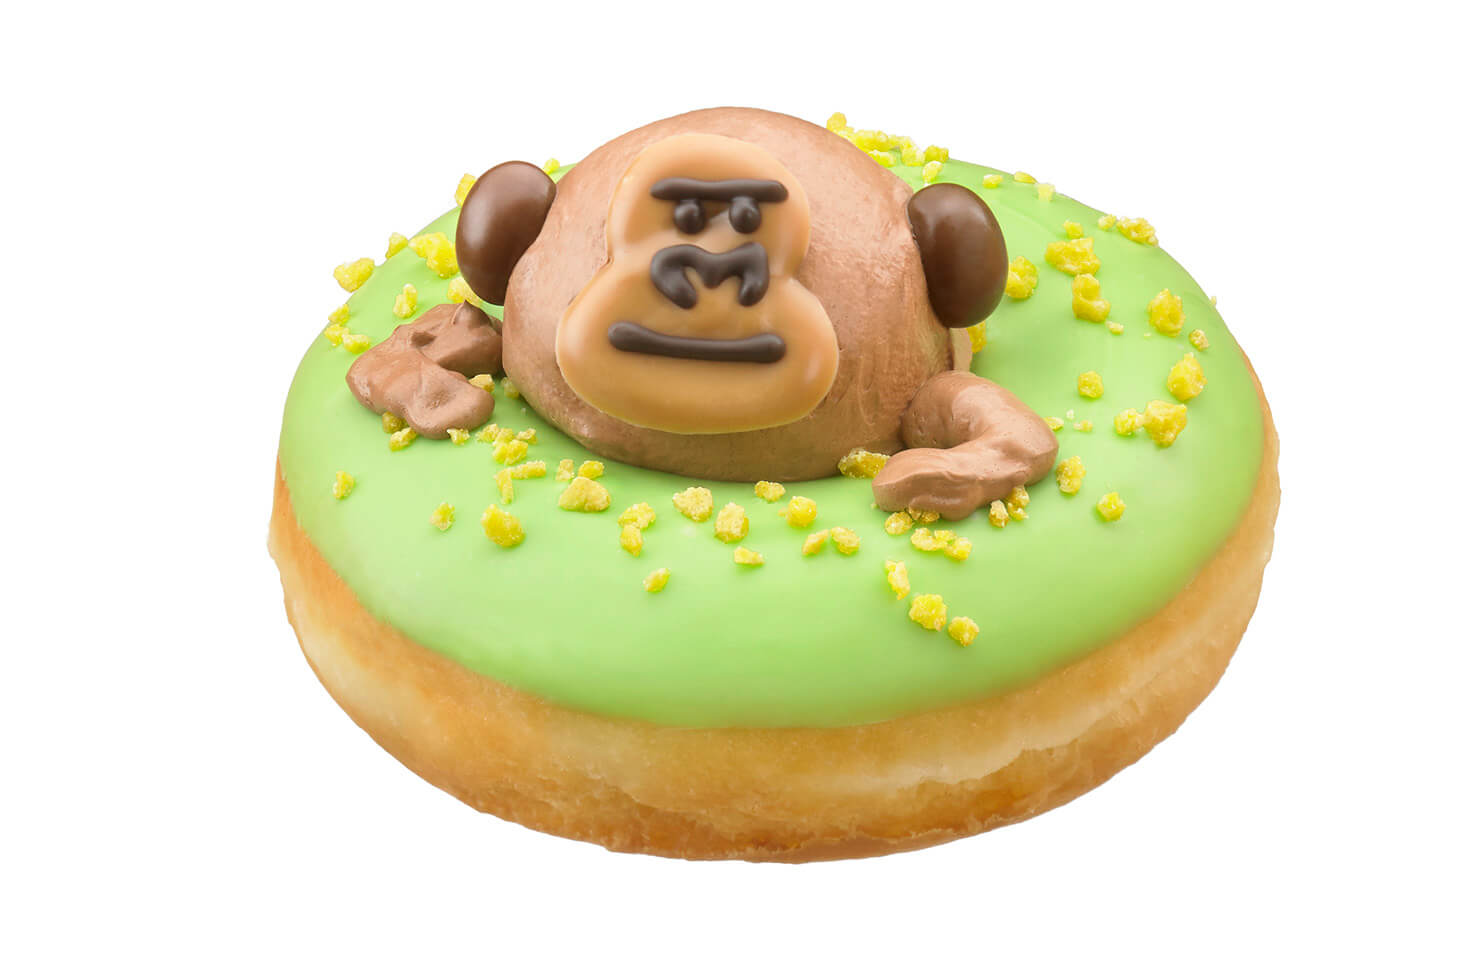 クリスピー・クリーム・ドーナツ・ジャパンkrispy kreme doughnutsjapan名古屋ゴリラnagoyagorilla (2)